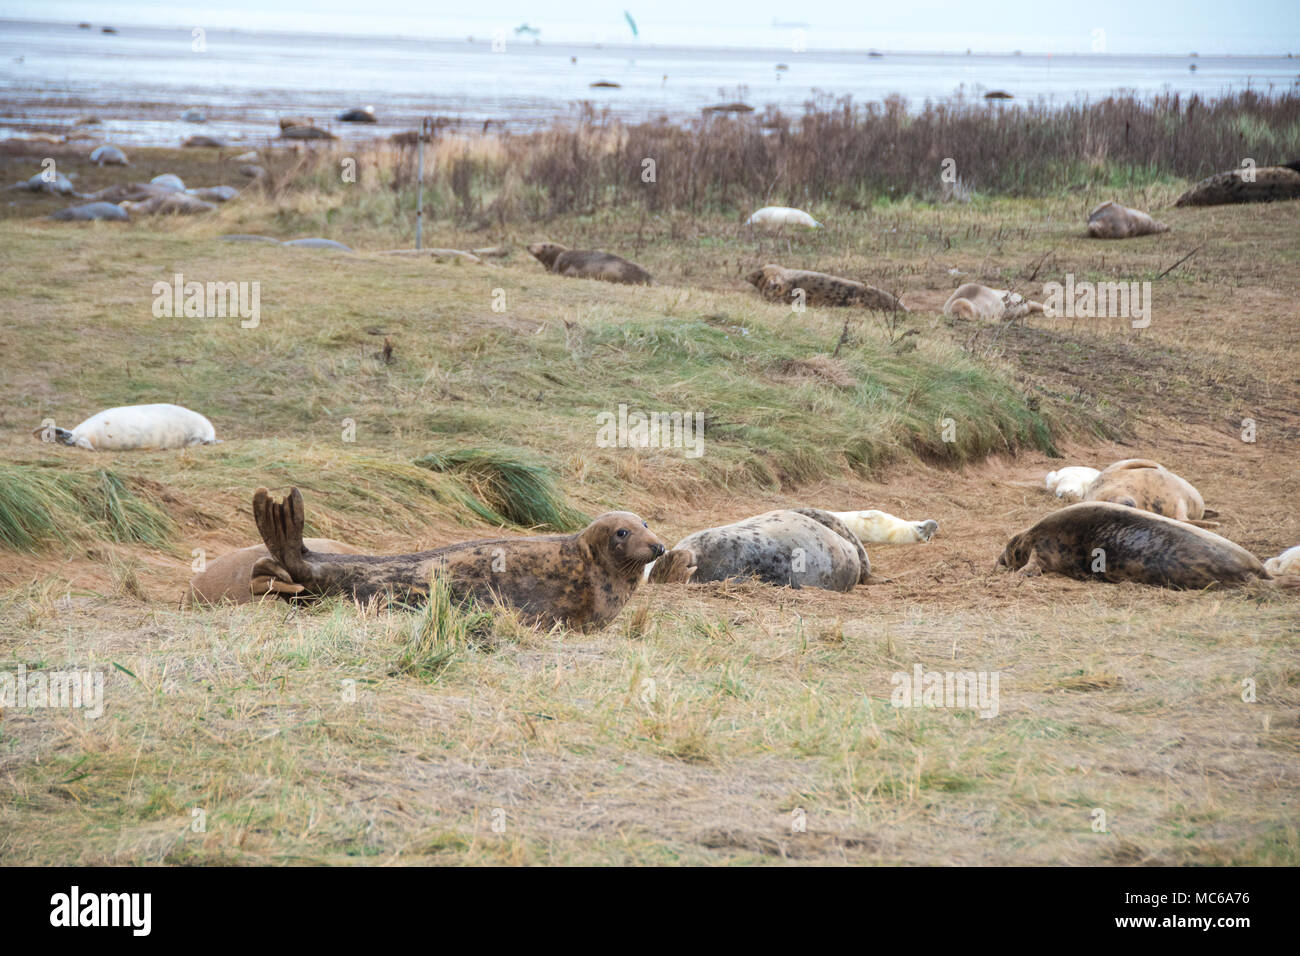 Donna Nook, Lincolnshire, ANGLETERRE - 15 novembre : les phoques gris viennent à terre à la fin de l'automne pour la saison de naissance le 15 novembre 2016 à Donna Nook Seal Sanctuary, Lincolns Banque D'Images